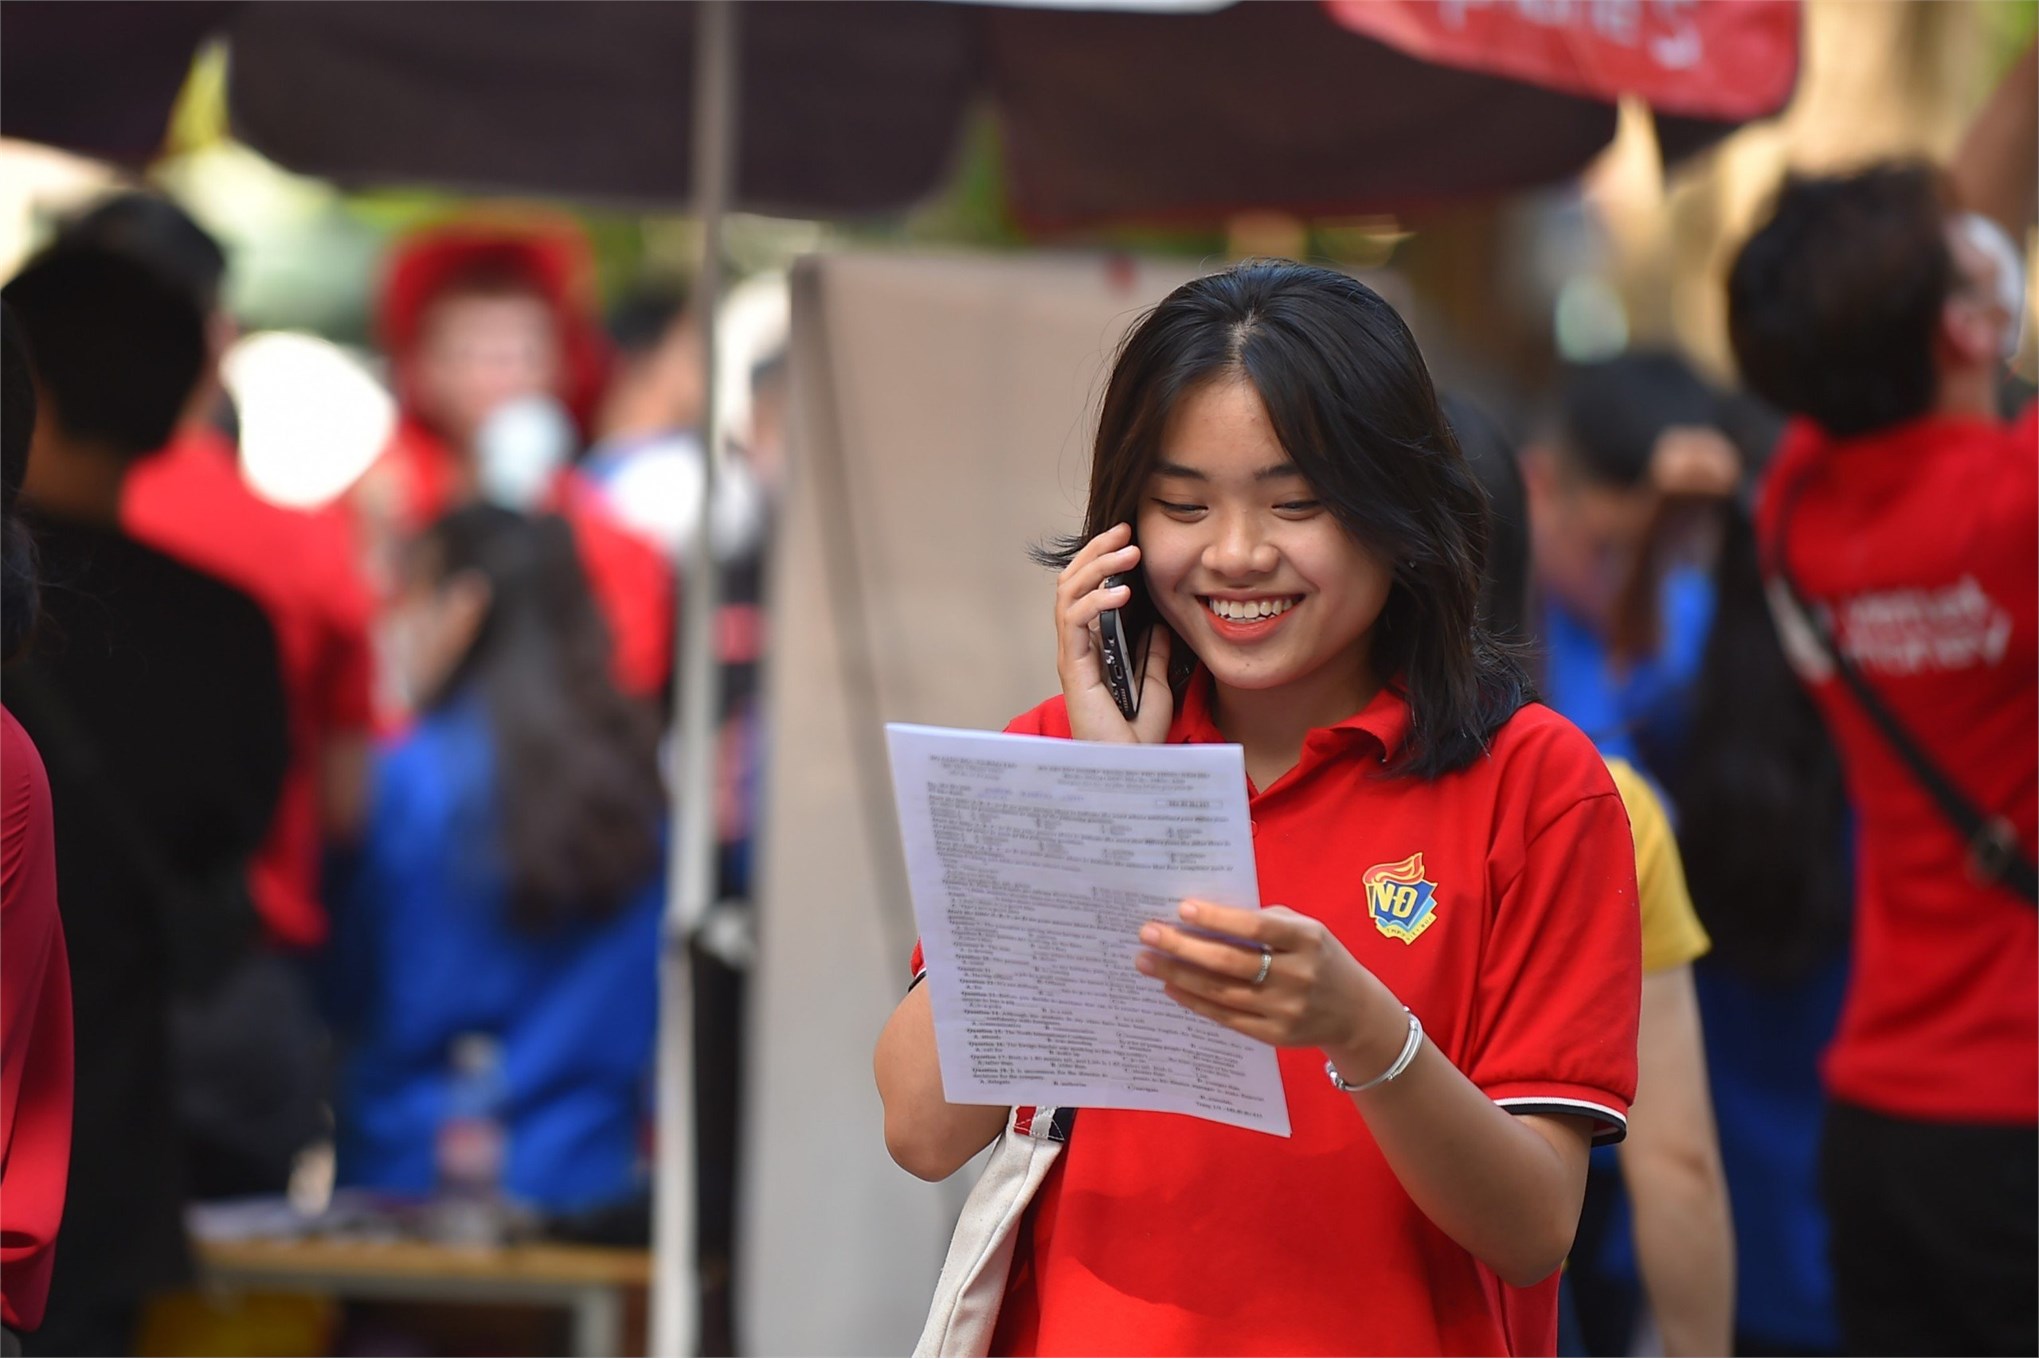 [daibieunhandan] Trường Đại học Công nghiệp Hà Nội công bố điểm sàn theo phương thức xét điểm thi tốt nghiệp THPT